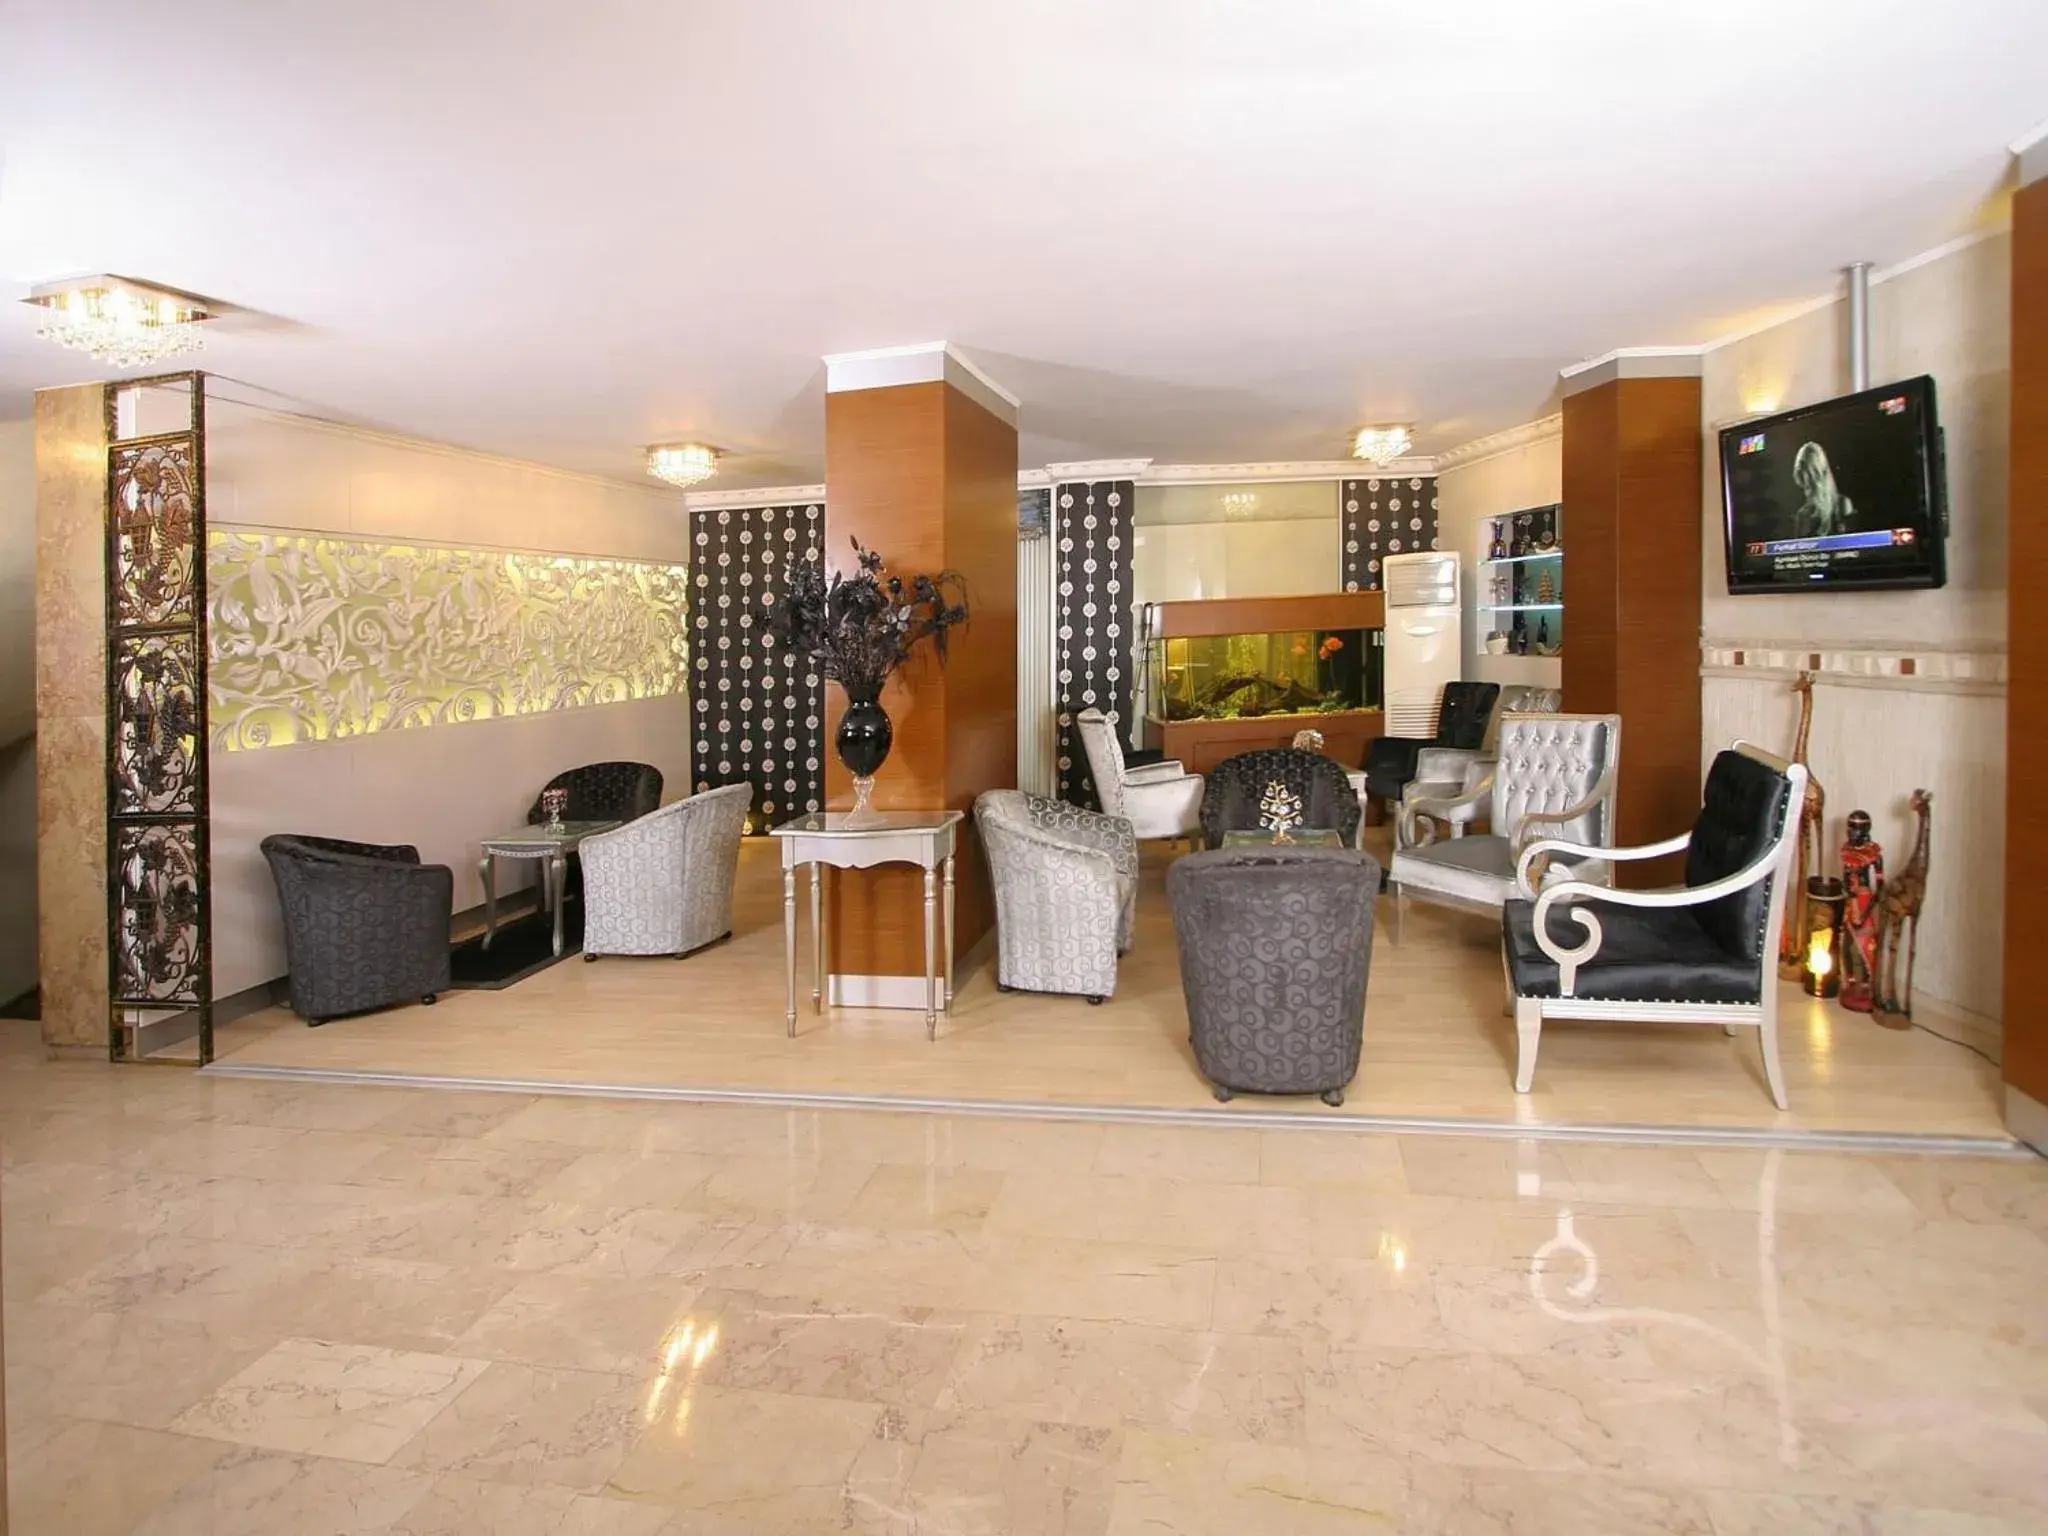 Lobby or reception in Maya Hotel